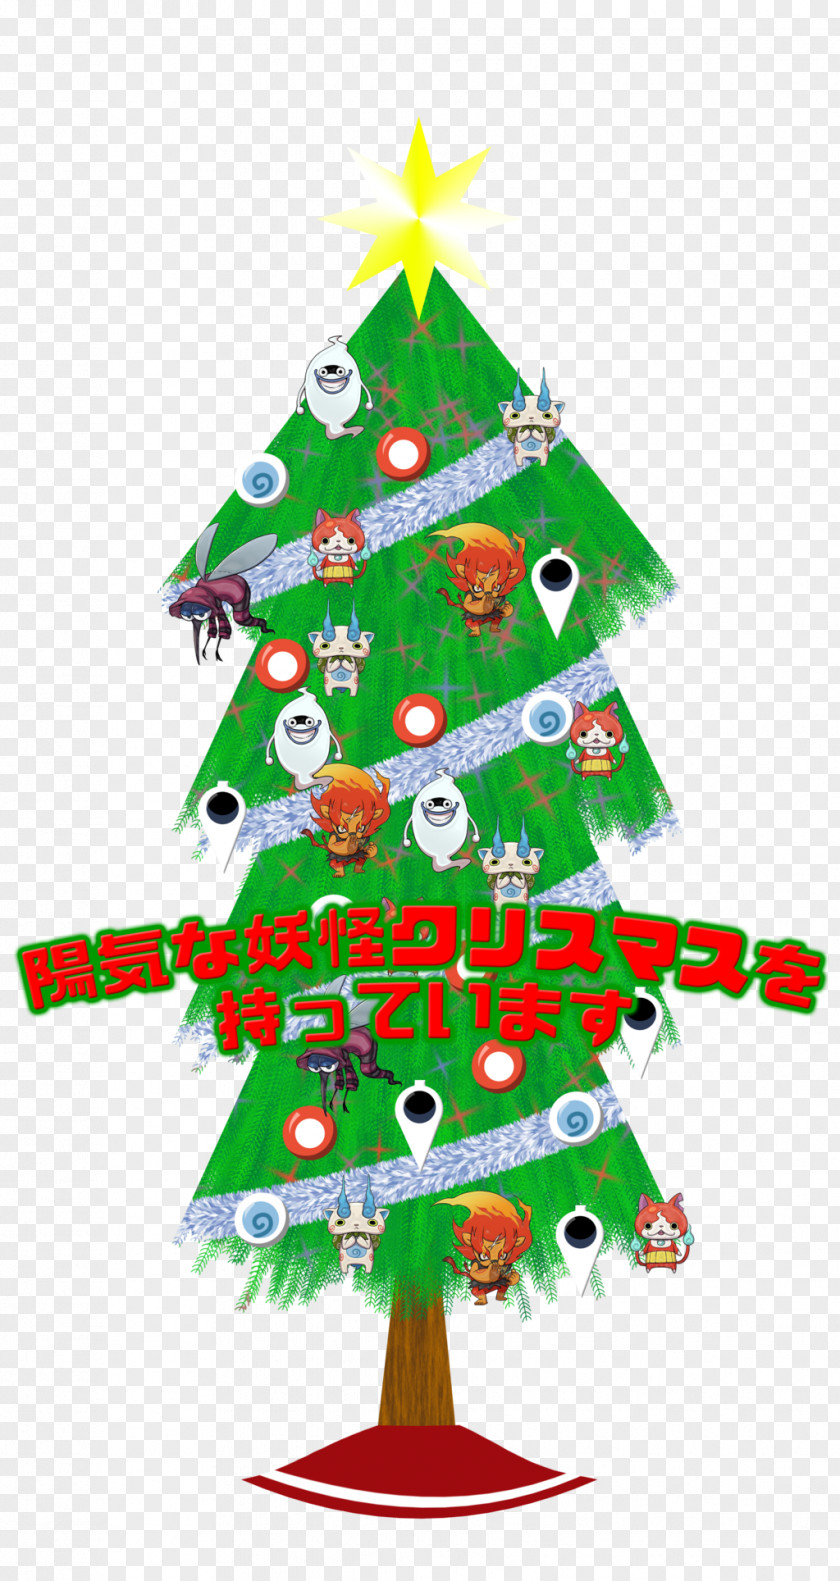 Tokyo Christmas Tree Santa Claus Ornament Yo-kai Watch PNG